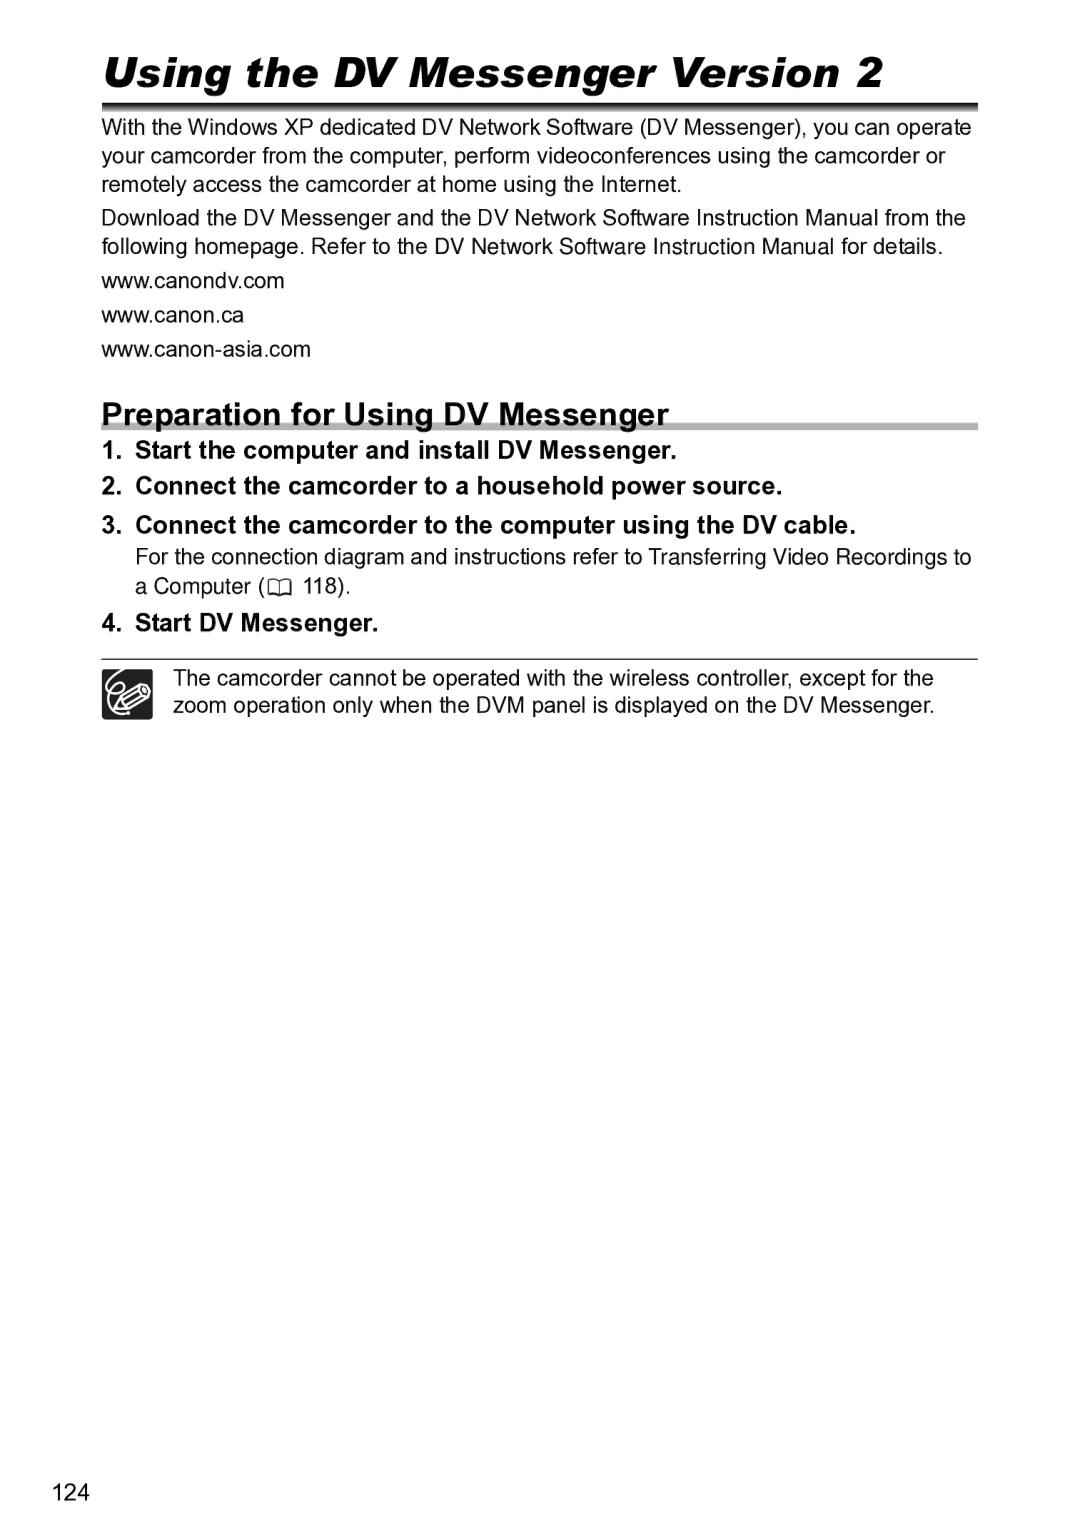 Canon S1 instruction manual Using the DV Messenger Version, Preparation for Using DV Messenger, Start DV Messenger 